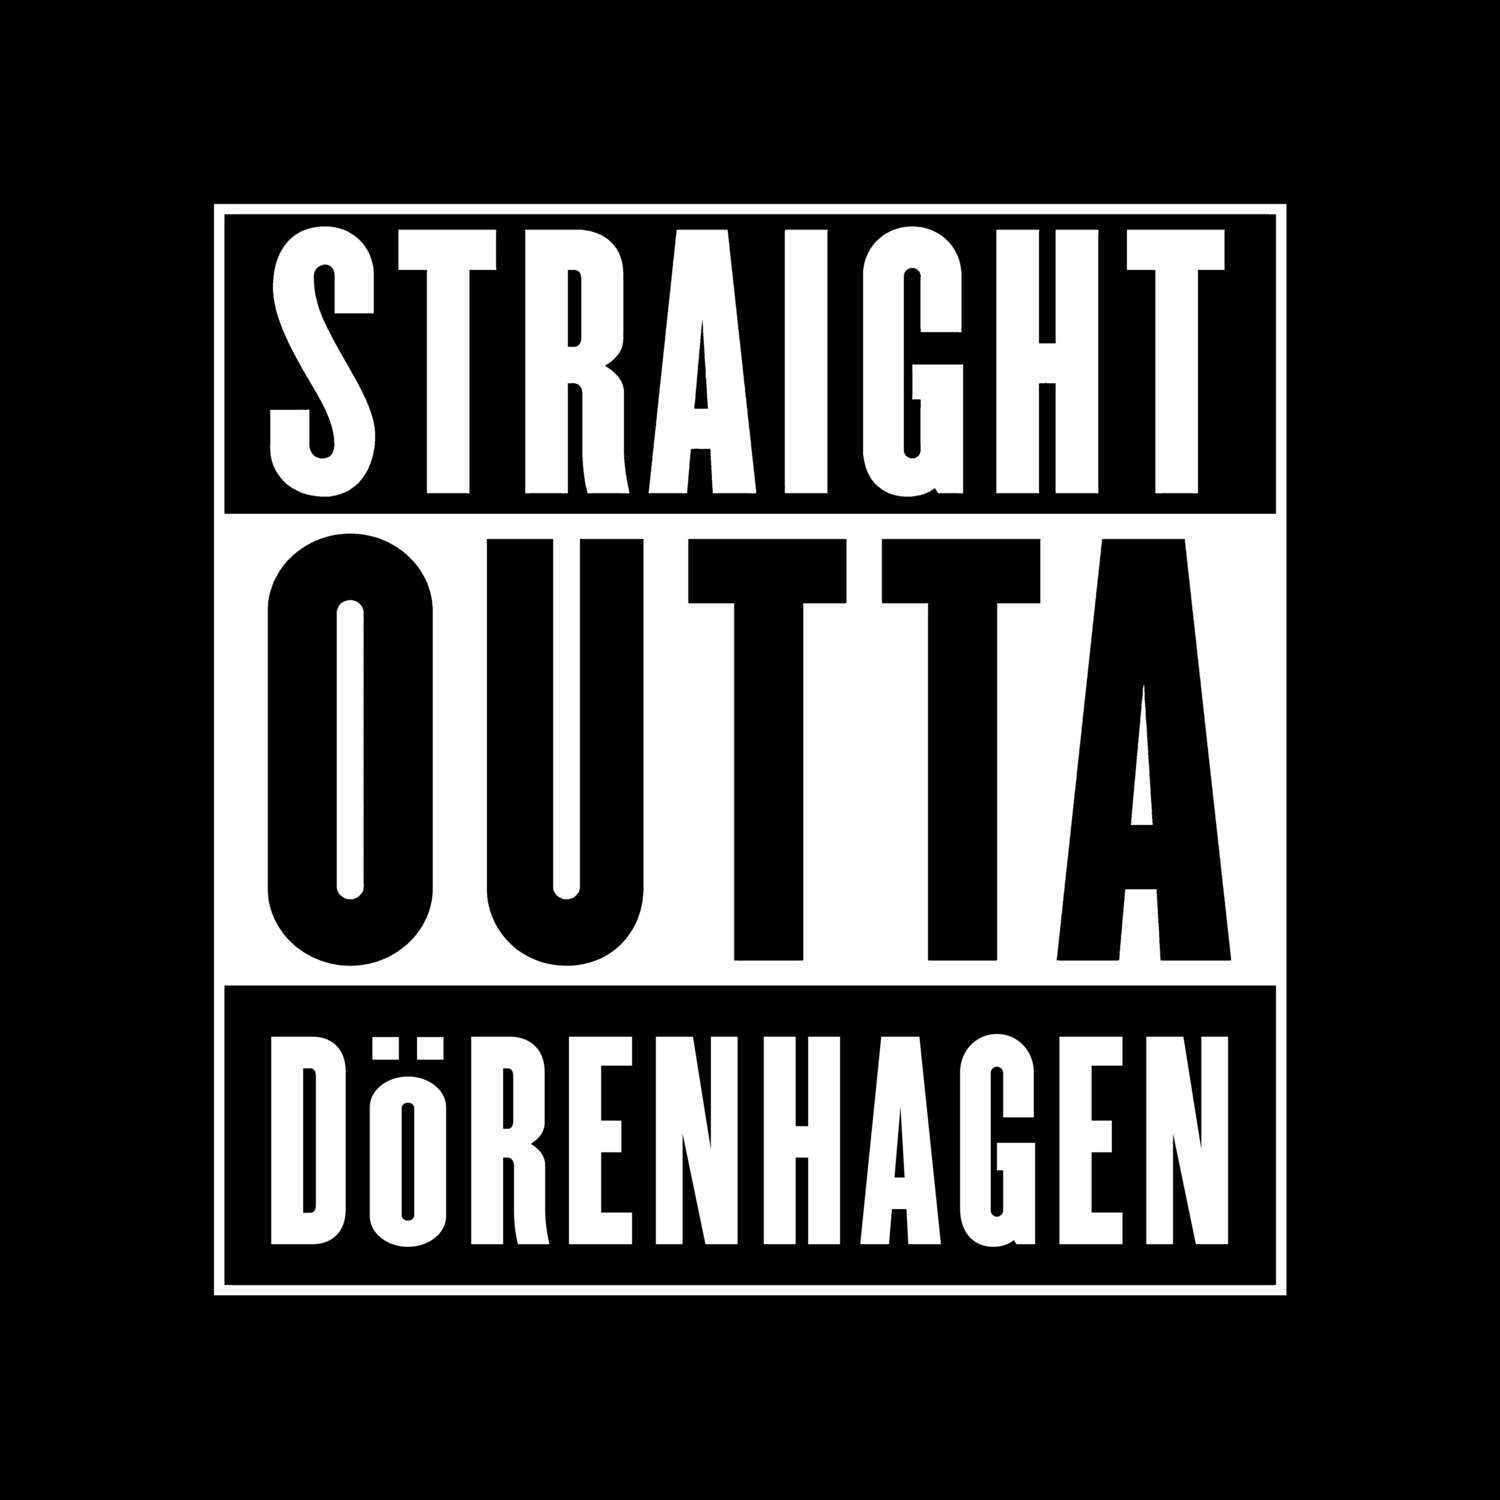 Dörenhagen T-Shirt »Straight Outta«